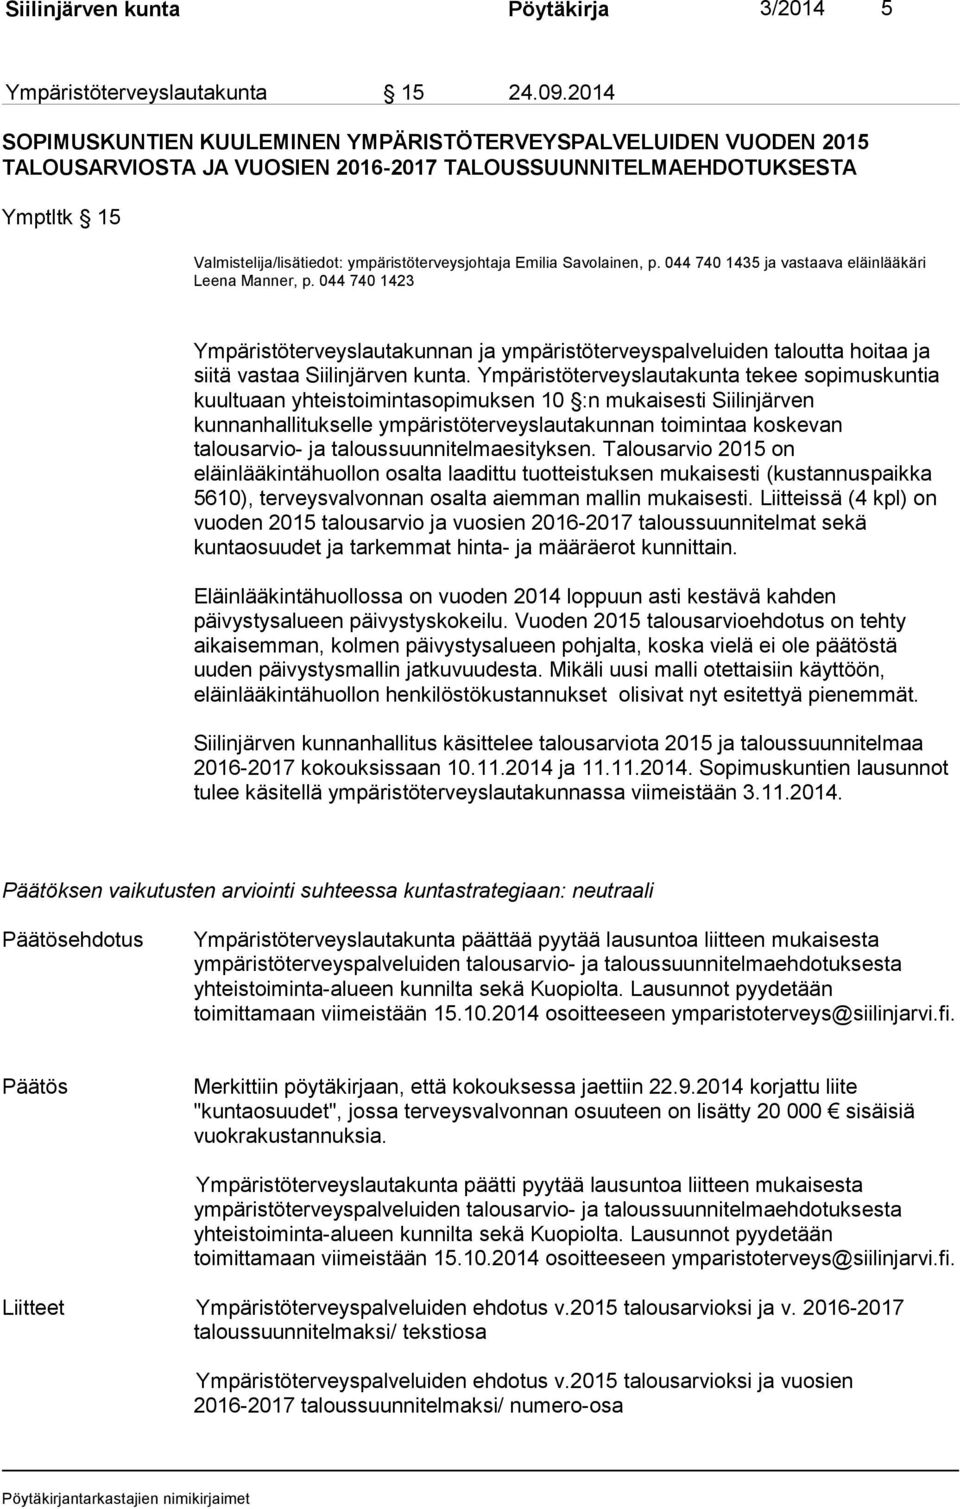 Emilia Savolainen, p. 044 740 1435 ja vastaava eläinlääkäri Leena Manner, p. 044 740 1423 Ympäristöterveyslautakunnan ja ympäristöterveyspalveluiden taloutta hoitaa ja siitä vastaa Siilinjärven kunta.